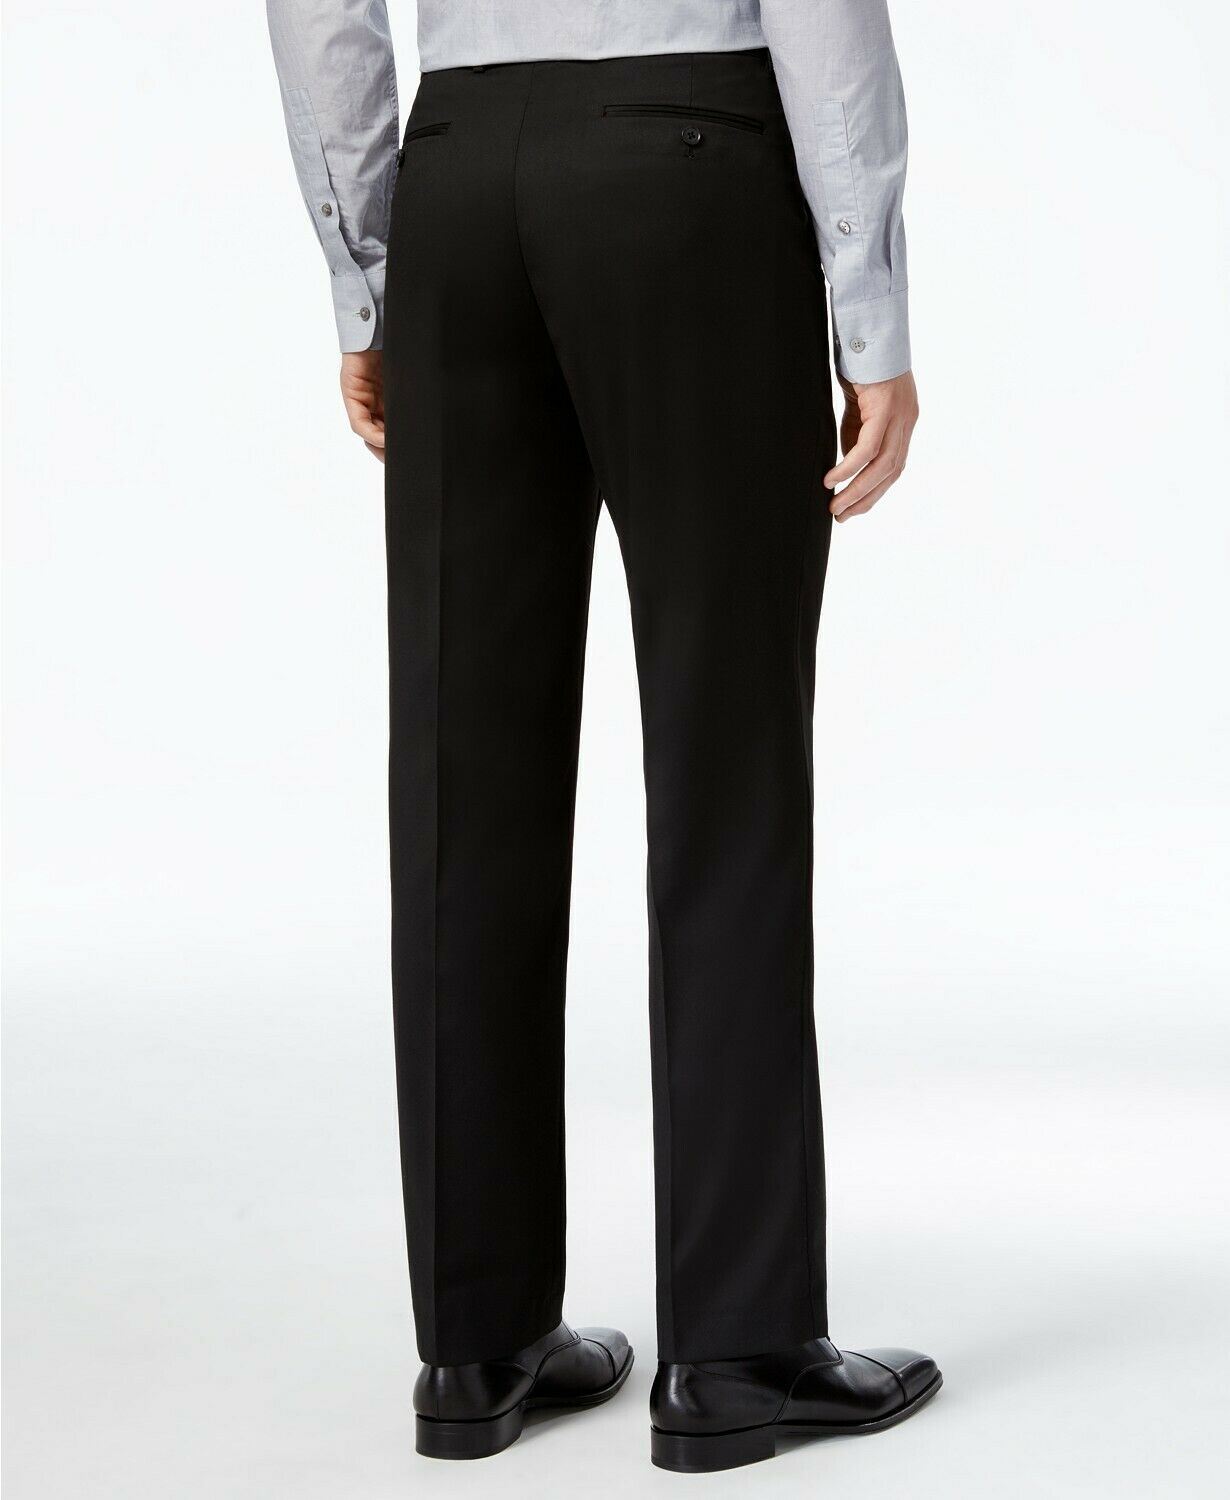 Alfani Men's 2 PC Suit 38S / 30 x 30 Black Stretch Performance Slim-Fit